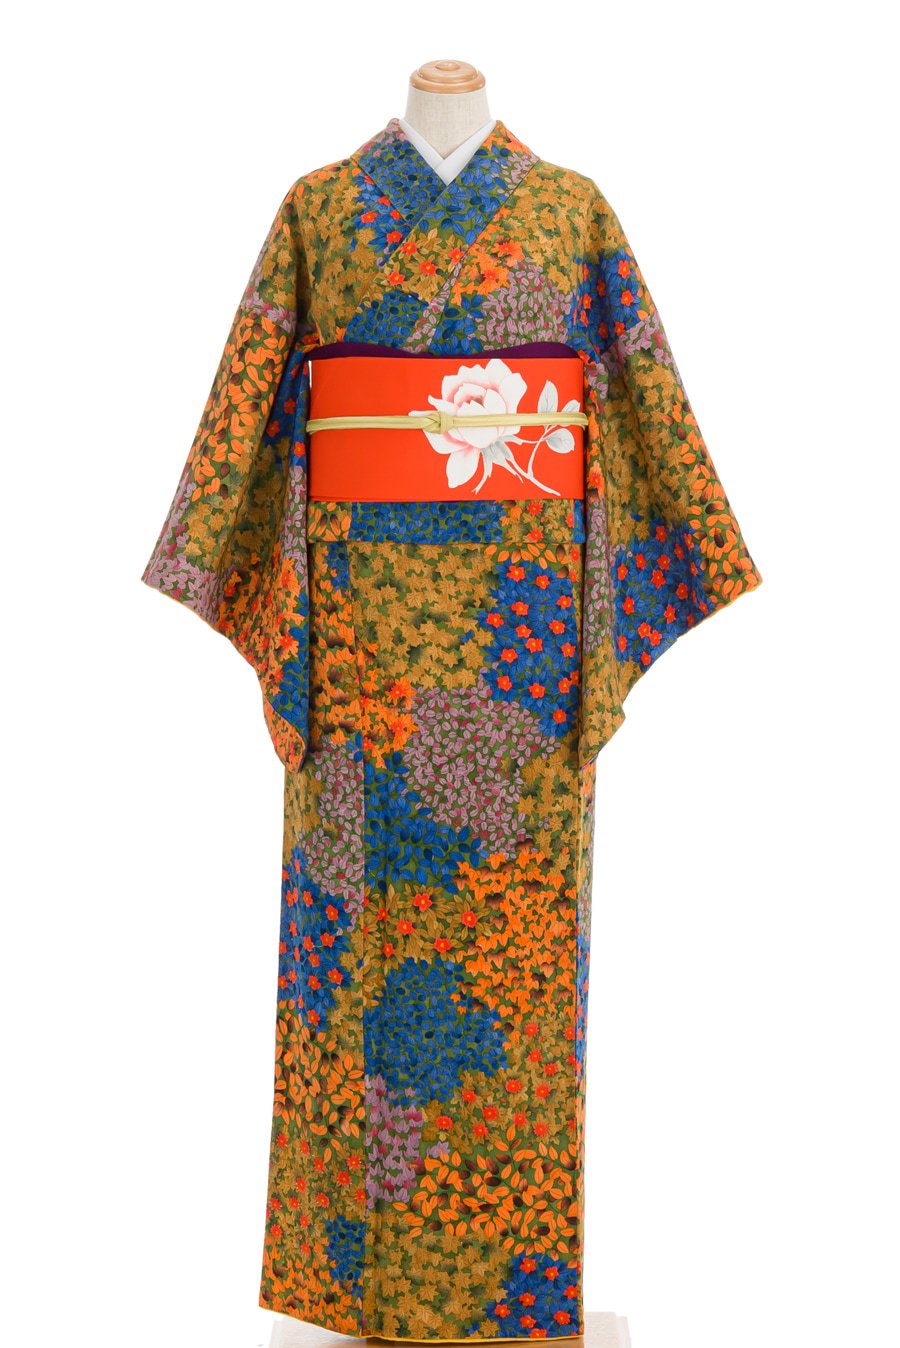 椿 菊 蔦の葉 色彩豊かな花模様 - からん::アンティーク着物